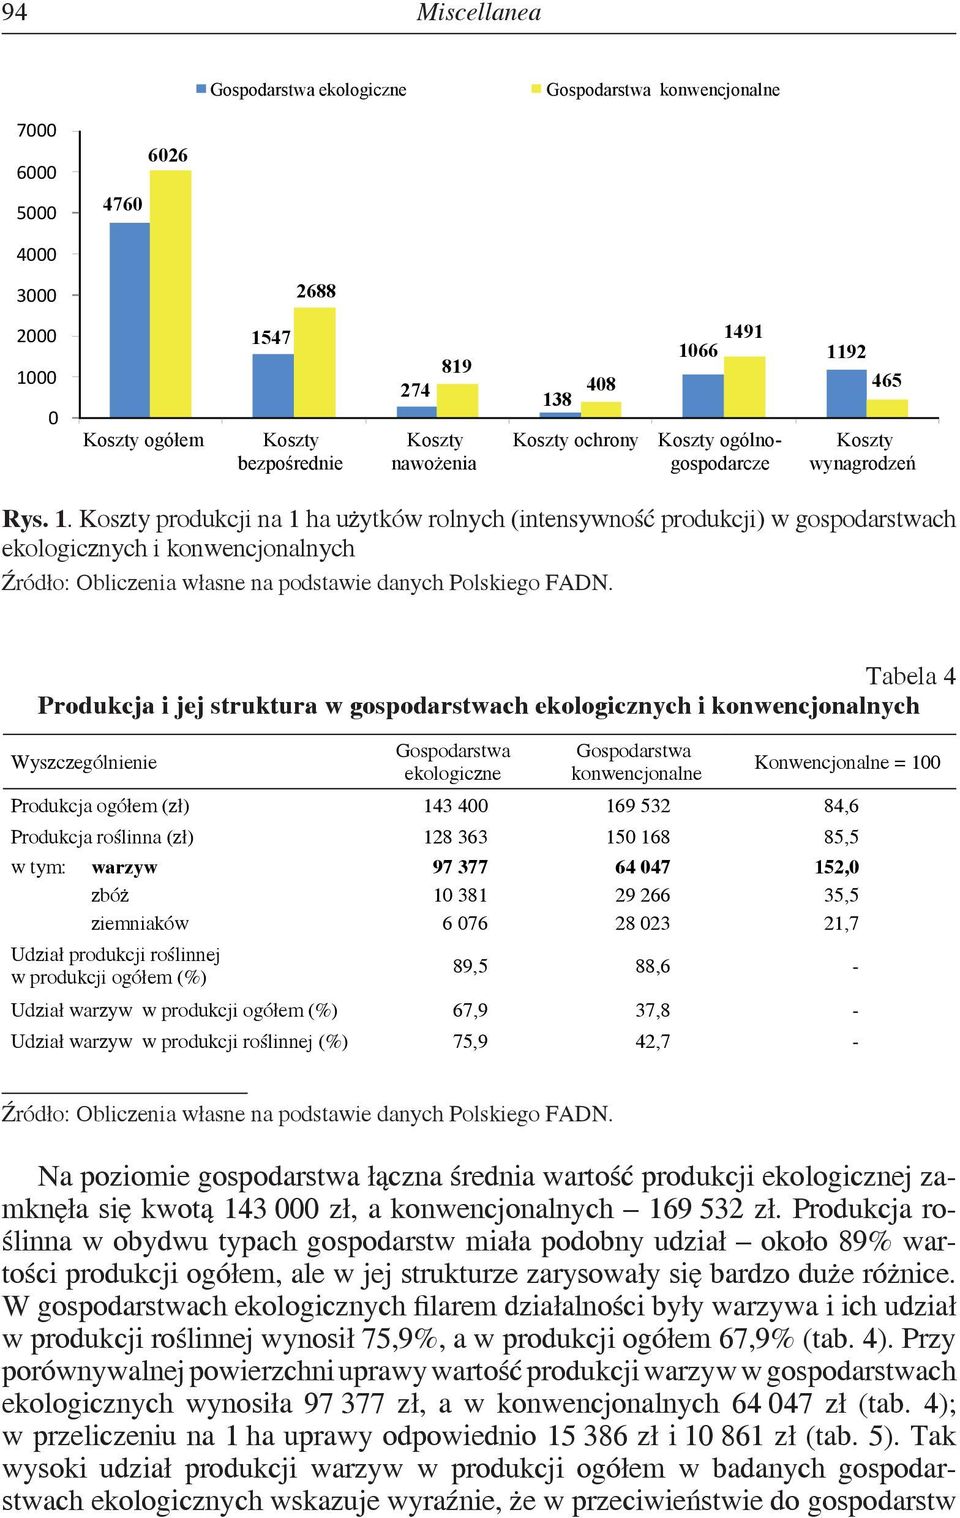 Koszty produkcji na 1 ha użytków rolnych (intensywność produkcji) w gospodarstwach ekologicznych i konwencjonalnych Źródło: Obliczenia własne na podstawie danych Polskiego FADN.